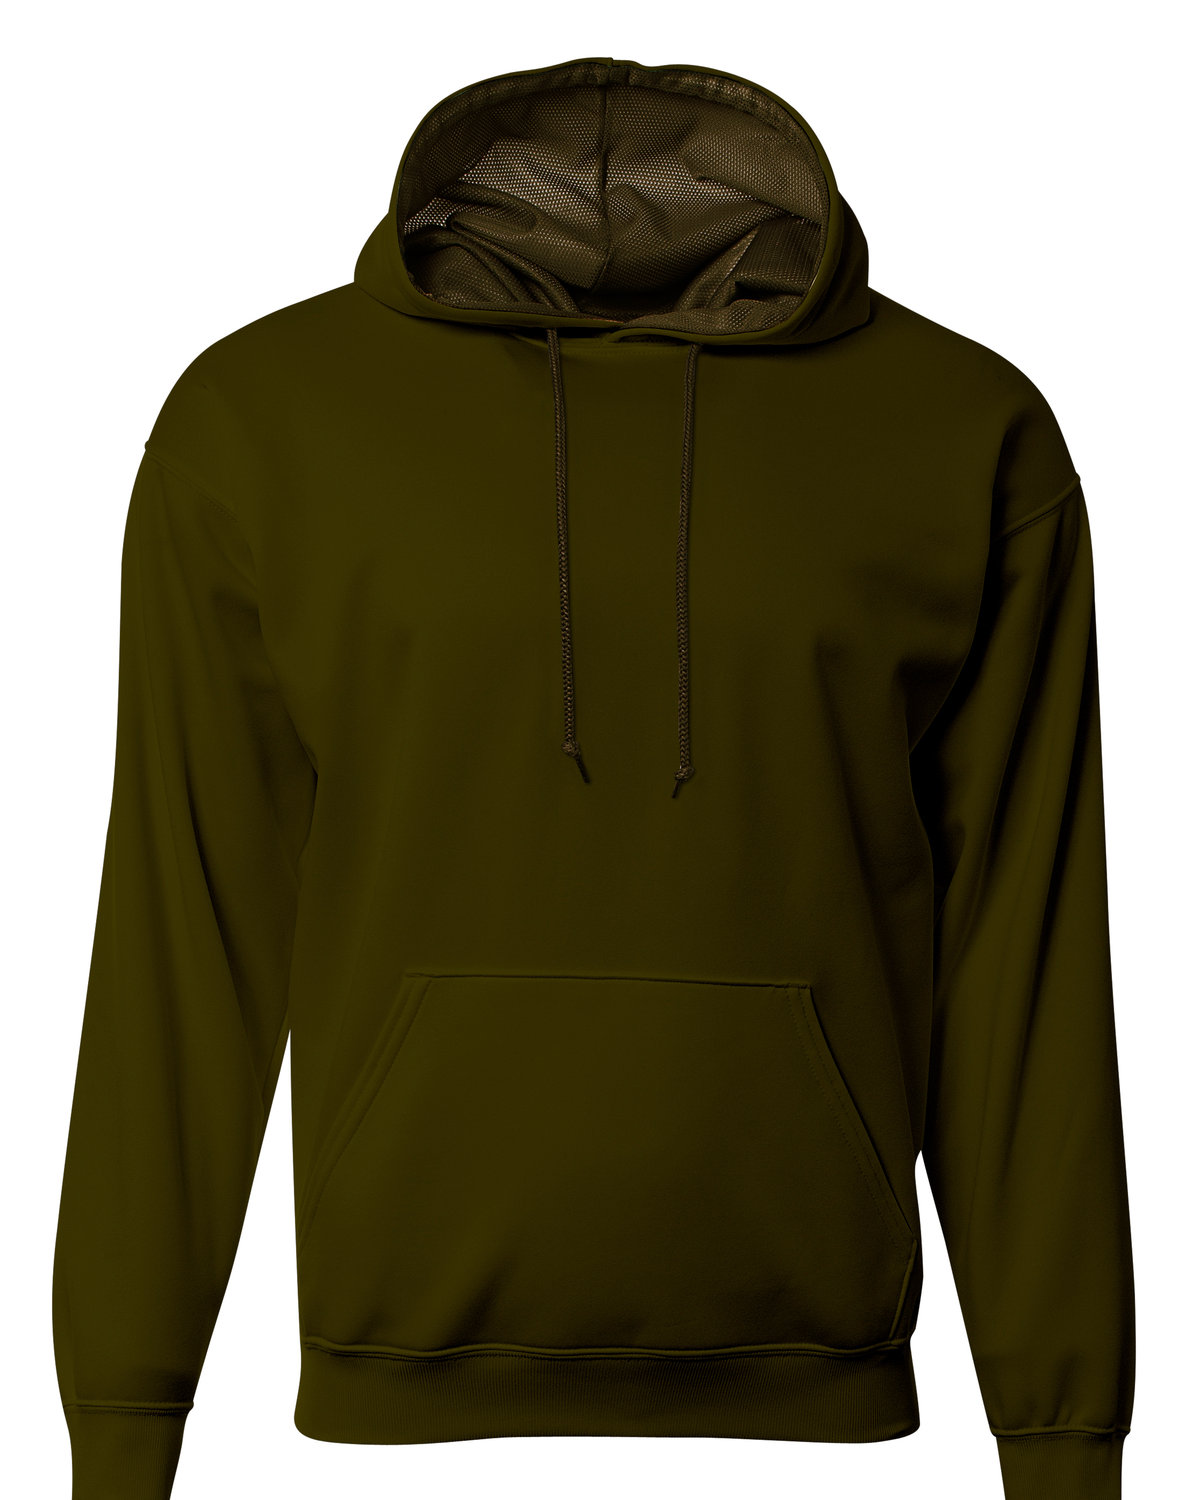 A4 Men's Sprint Tech Fleece Hooded Sweatshirt MILITARY GREEN 